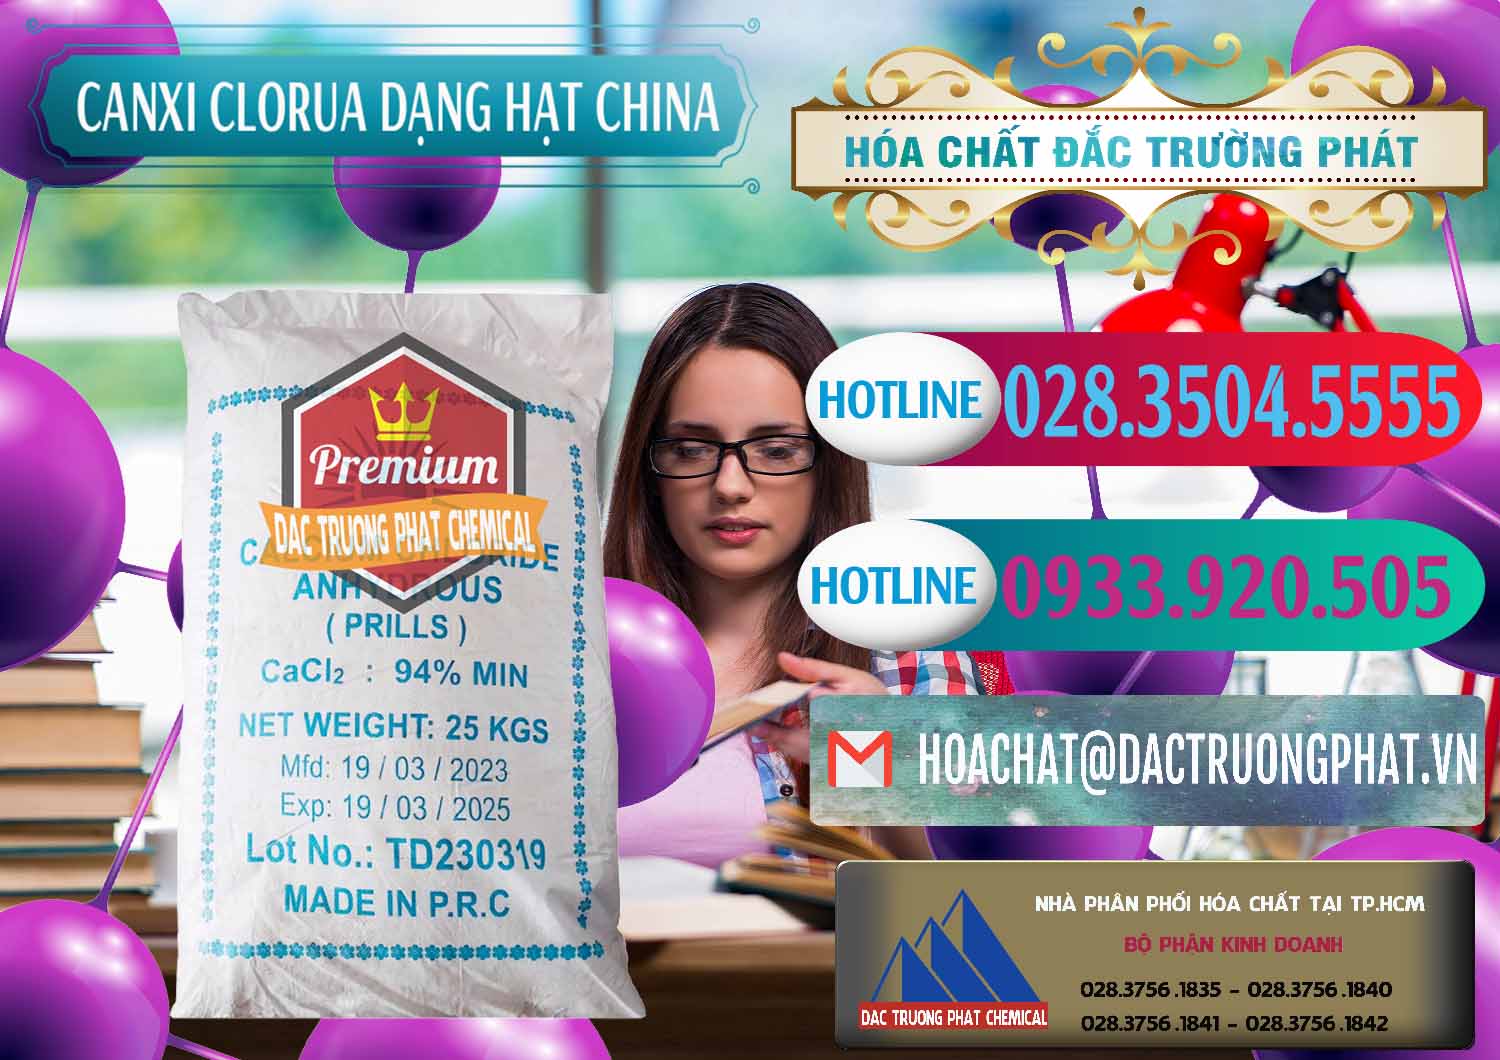 Cty phân phối - bán CaCl2 – Canxi Clorua 94% Dạng Hạt Trung Quốc China - 0373 - Cty bán ( cung cấp ) hóa chất tại TP.HCM - truongphat.vn